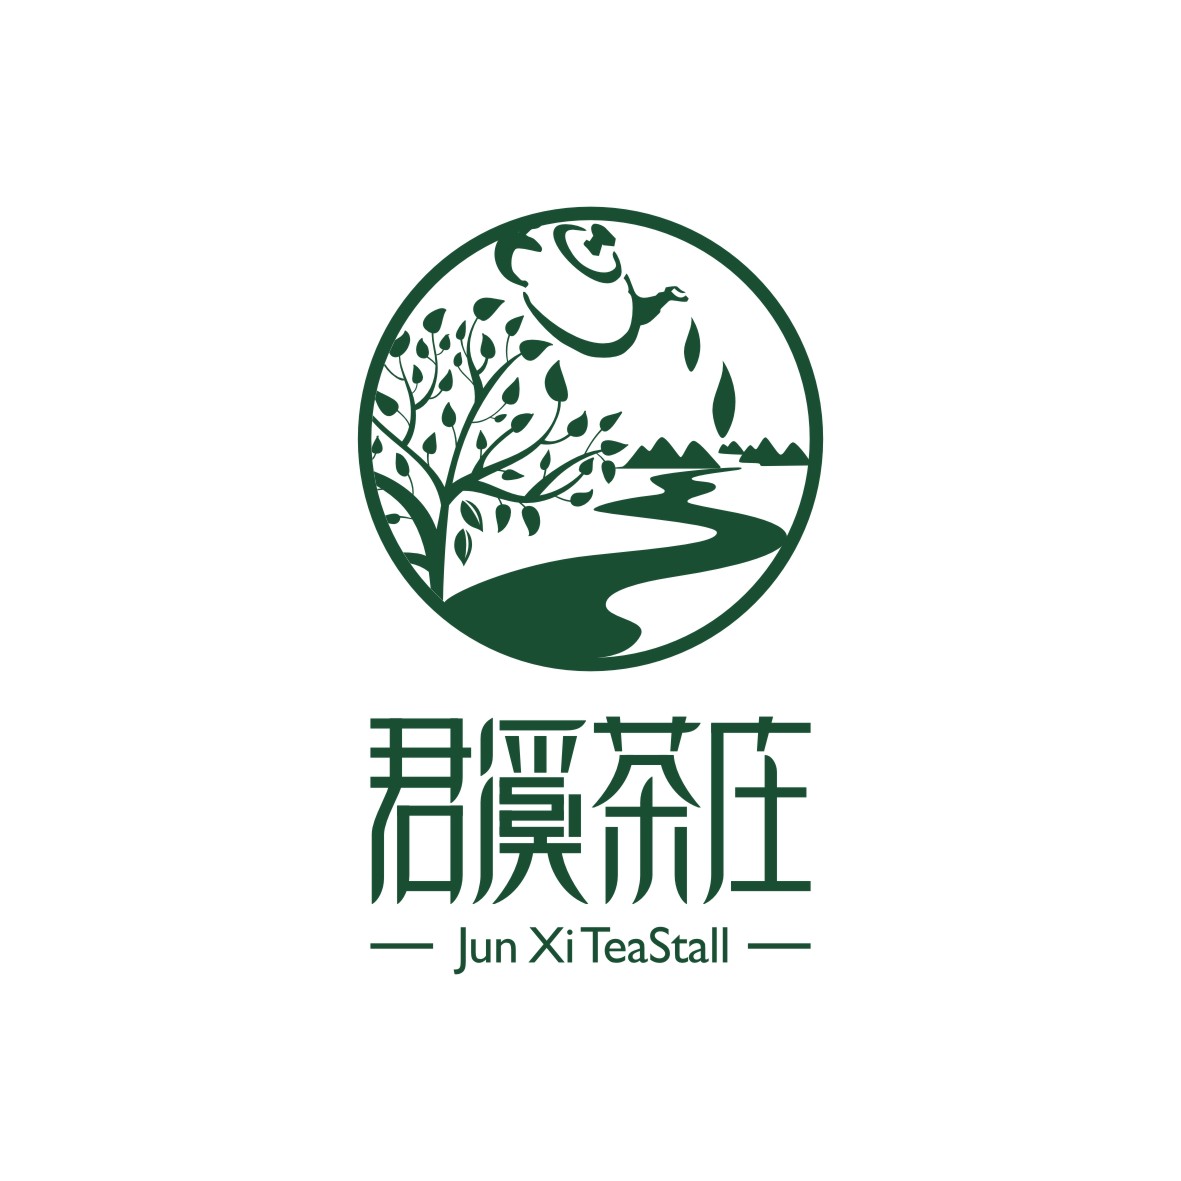 广州品翰文化发展有限公司商标君溪茶庄 JUN XI TEASTALL（43类）商标转让多少钱？